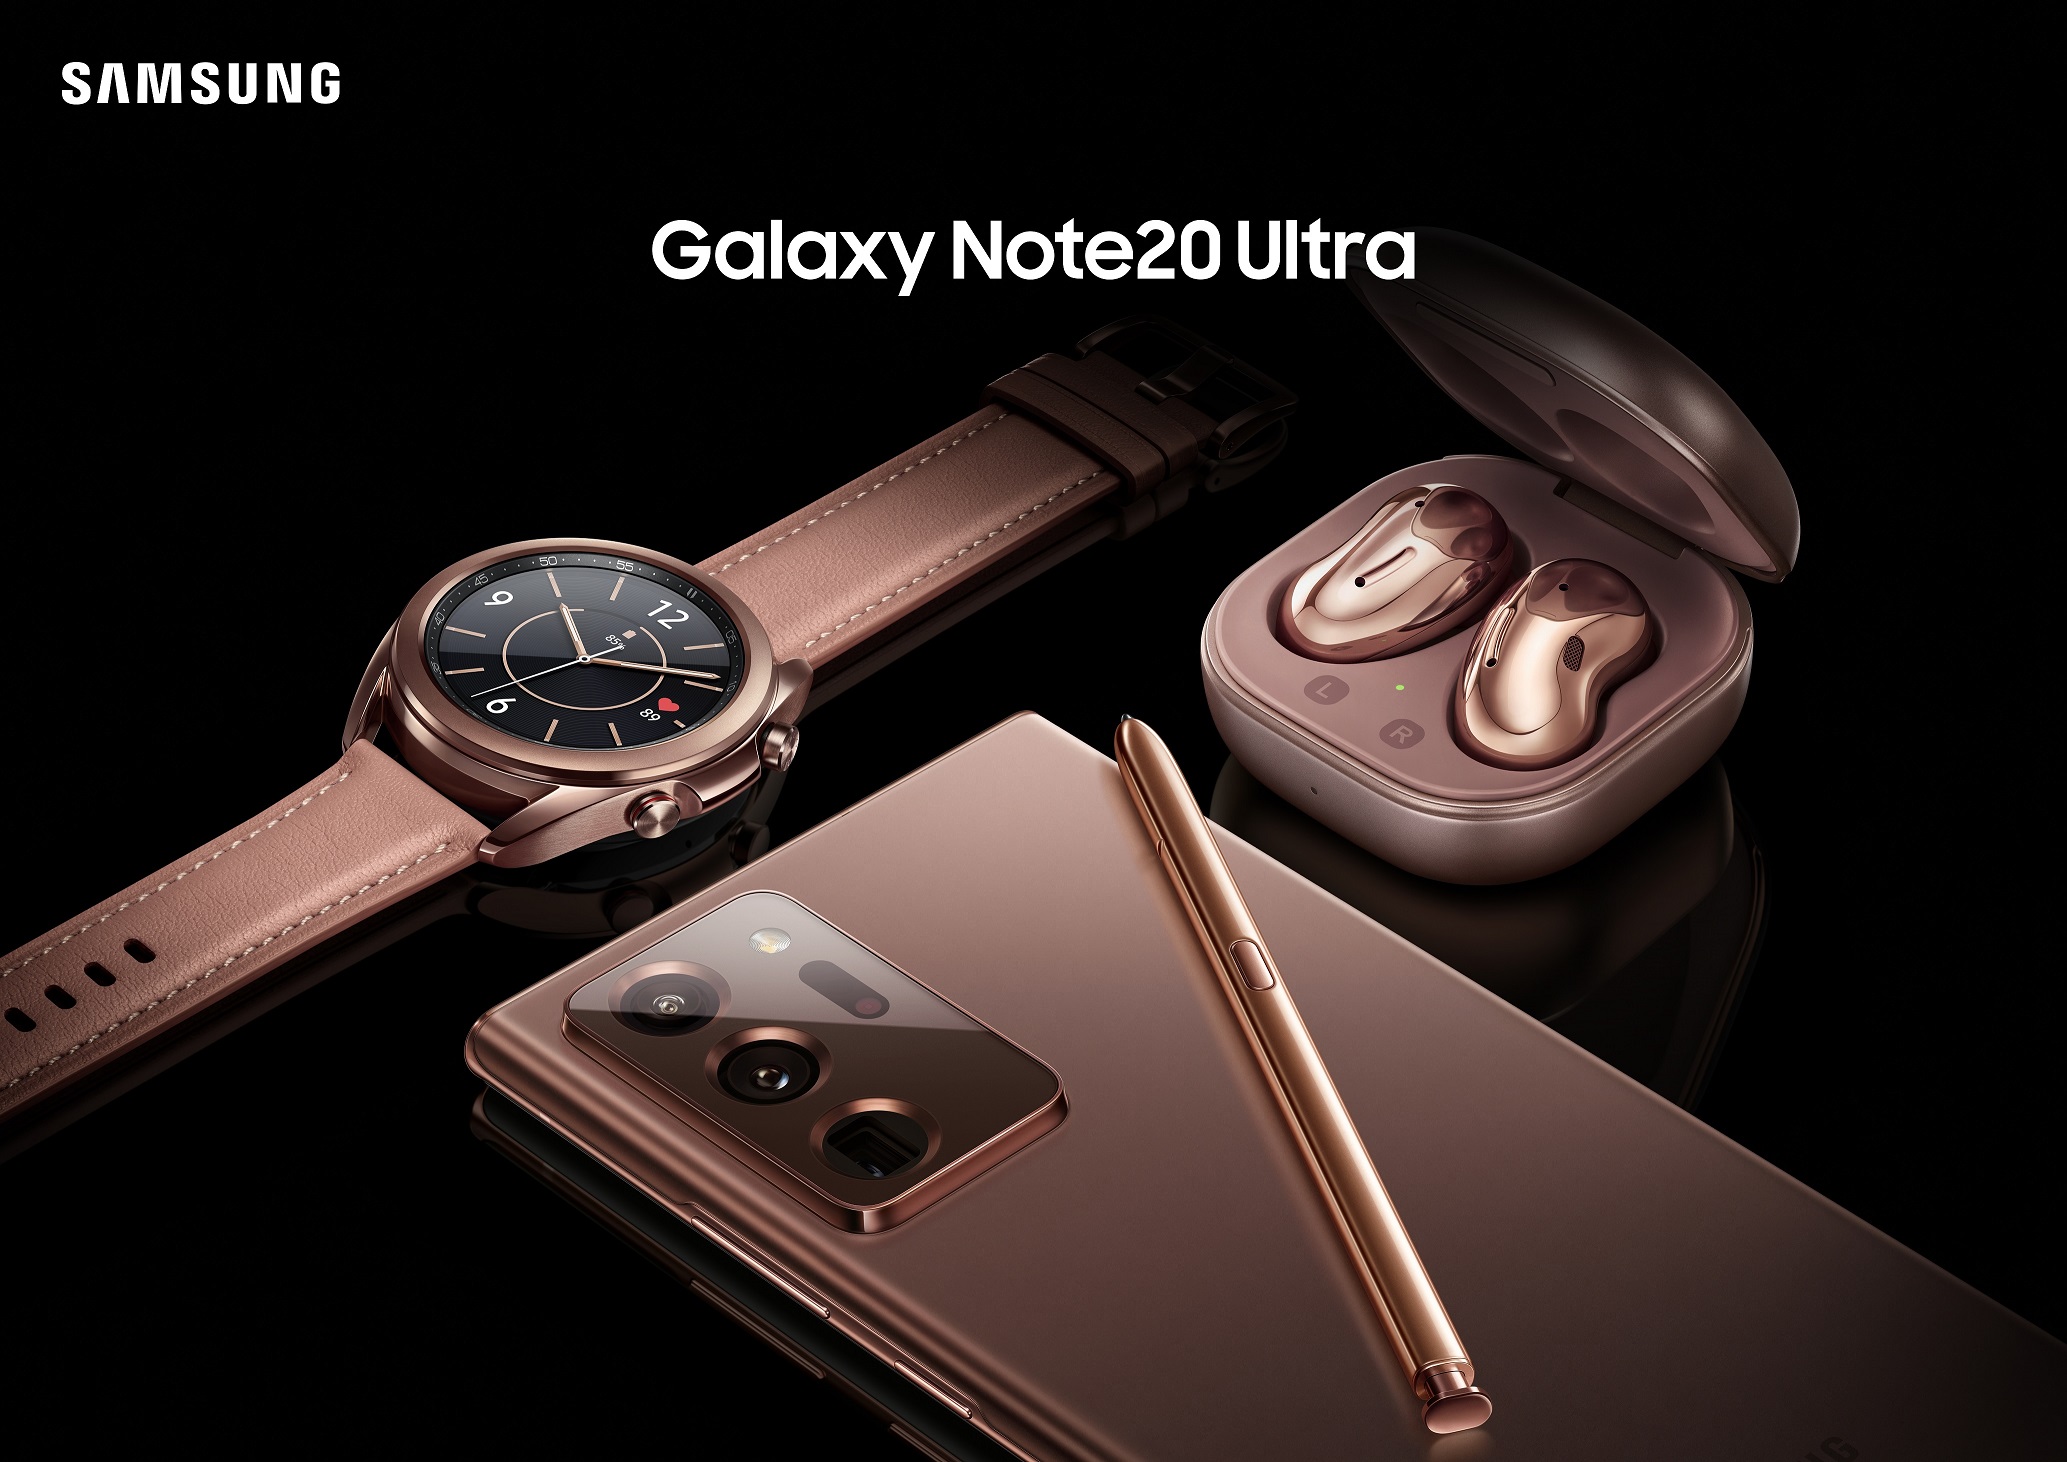 วางจำหน่ายแล้ววันนี้! Samsung Galaxy Note20 Series สมาร์ทโฟนทรงพลังรุ่นล่าสุด พร้อม Galaxy Buds Live และ Galaxy Watch3